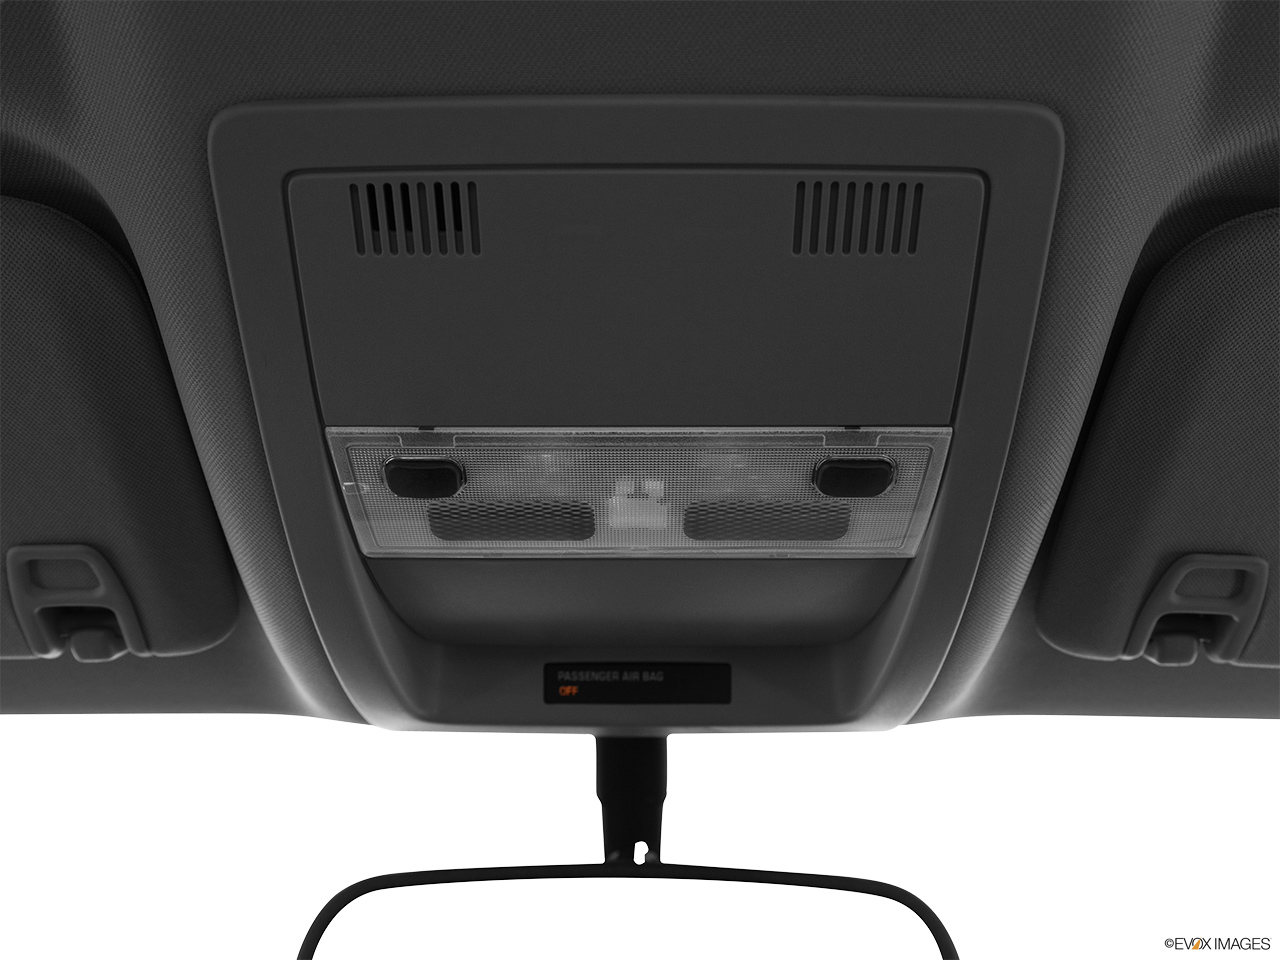 2013 GMC Sierra 1500 Hybrid 3HA Courtesy lamps/ceiling controls. 